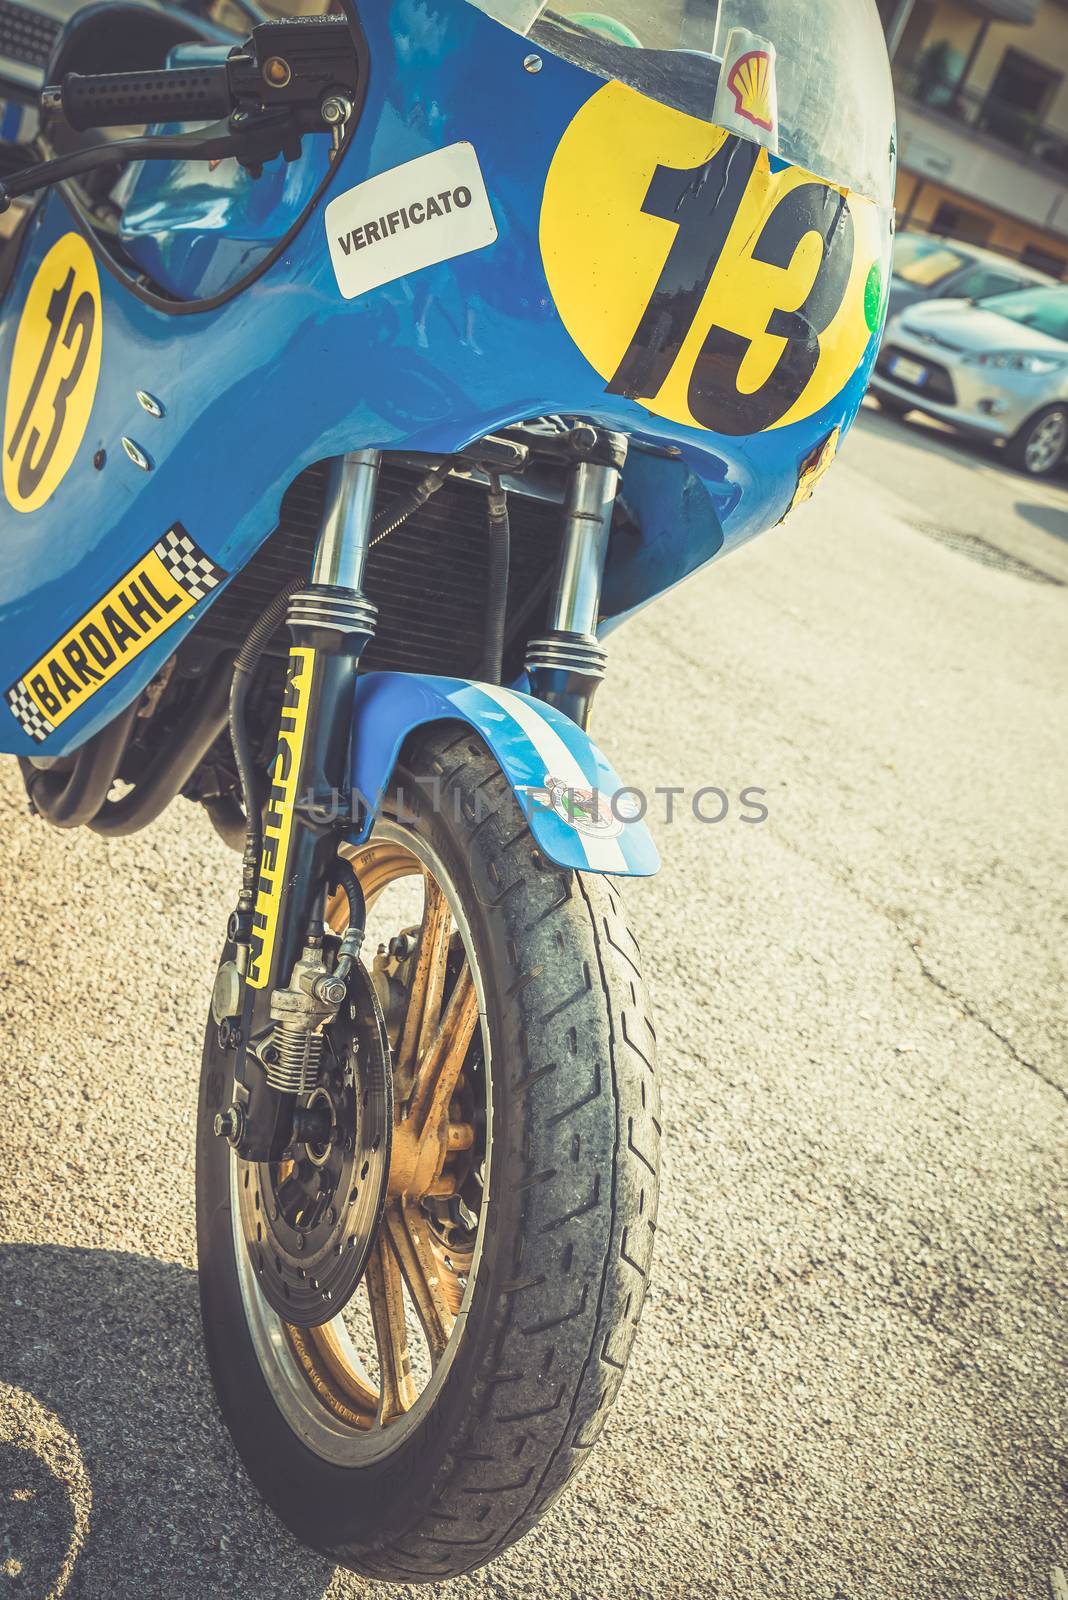 TERNI,ITALY SEPTEMBER 18 2020:detail of a vintage Kawasaky 500 motorcycle